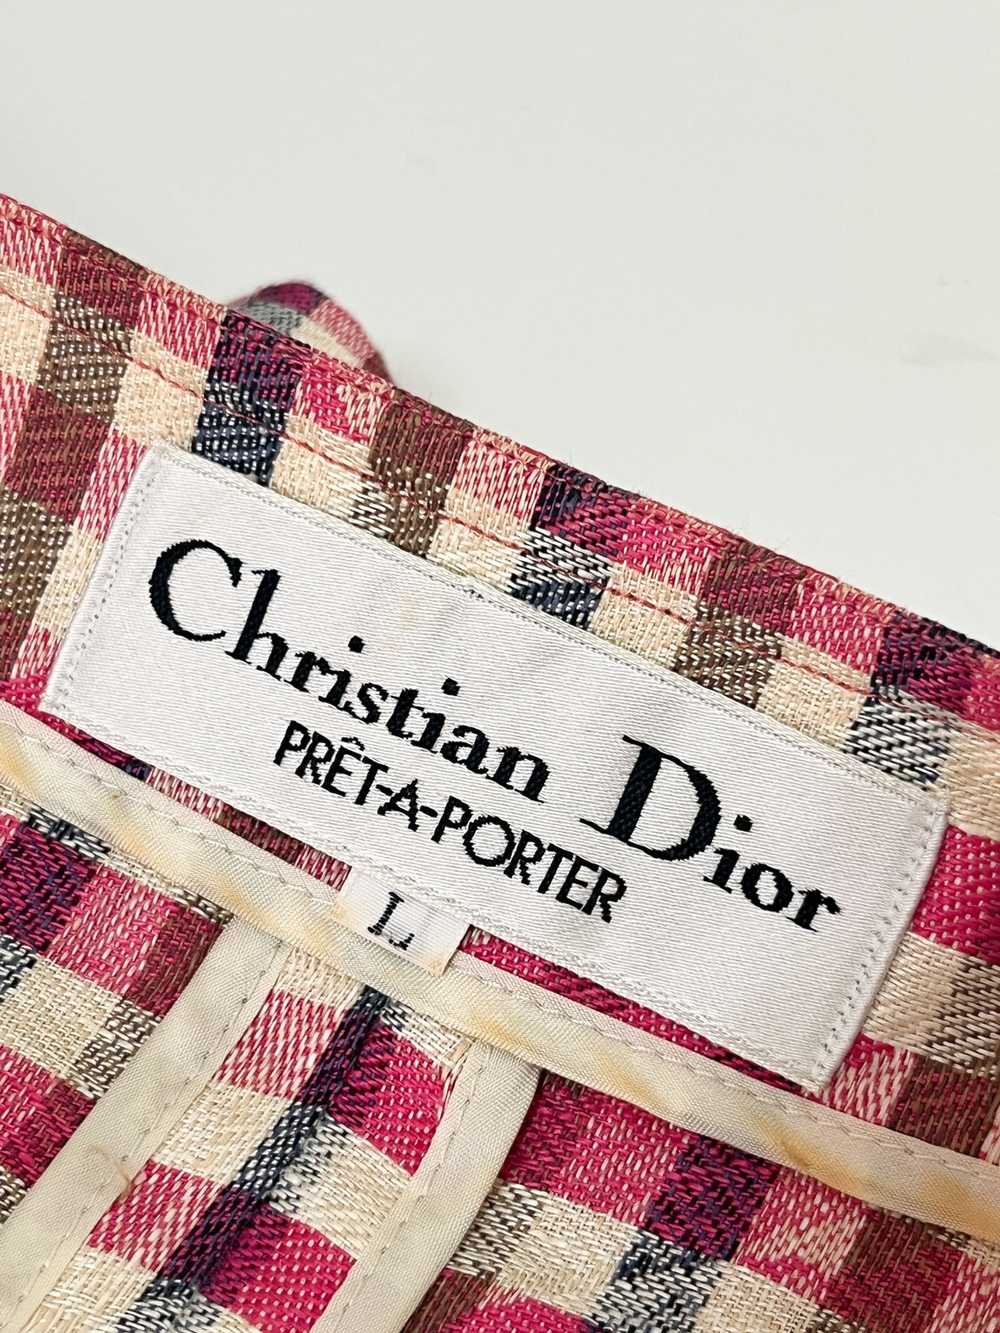 Dior Christian Dior PRET-A-PORTER - image 5